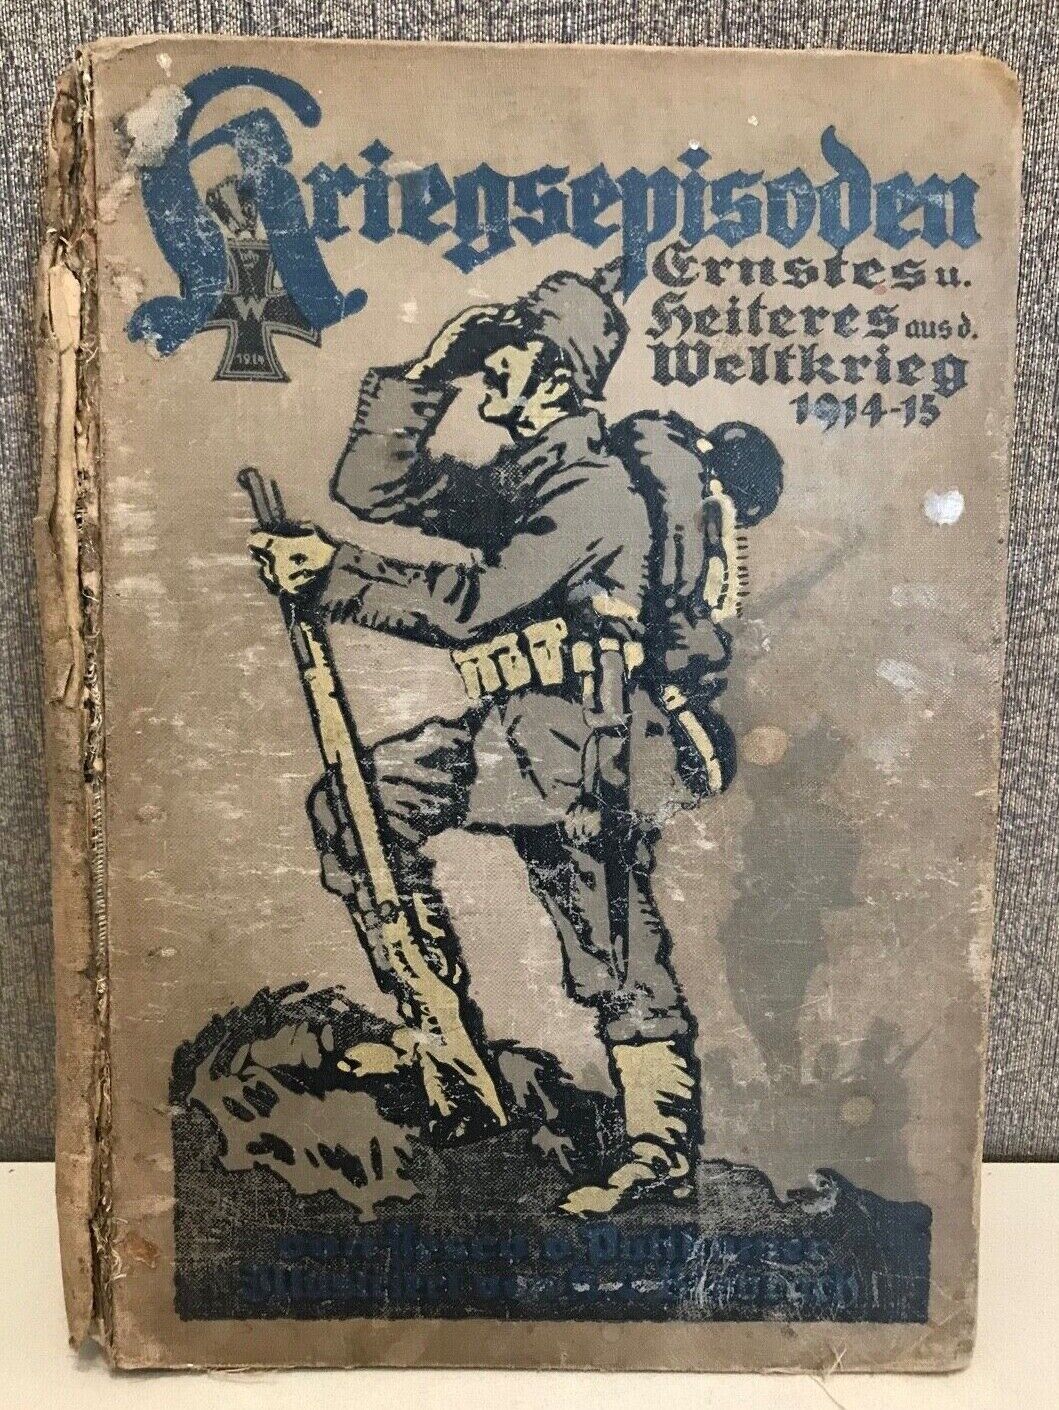 Antique German WW1 Kriegsepisoden Ernstes und Heiteres aus dem Weltkrieg 1914/15